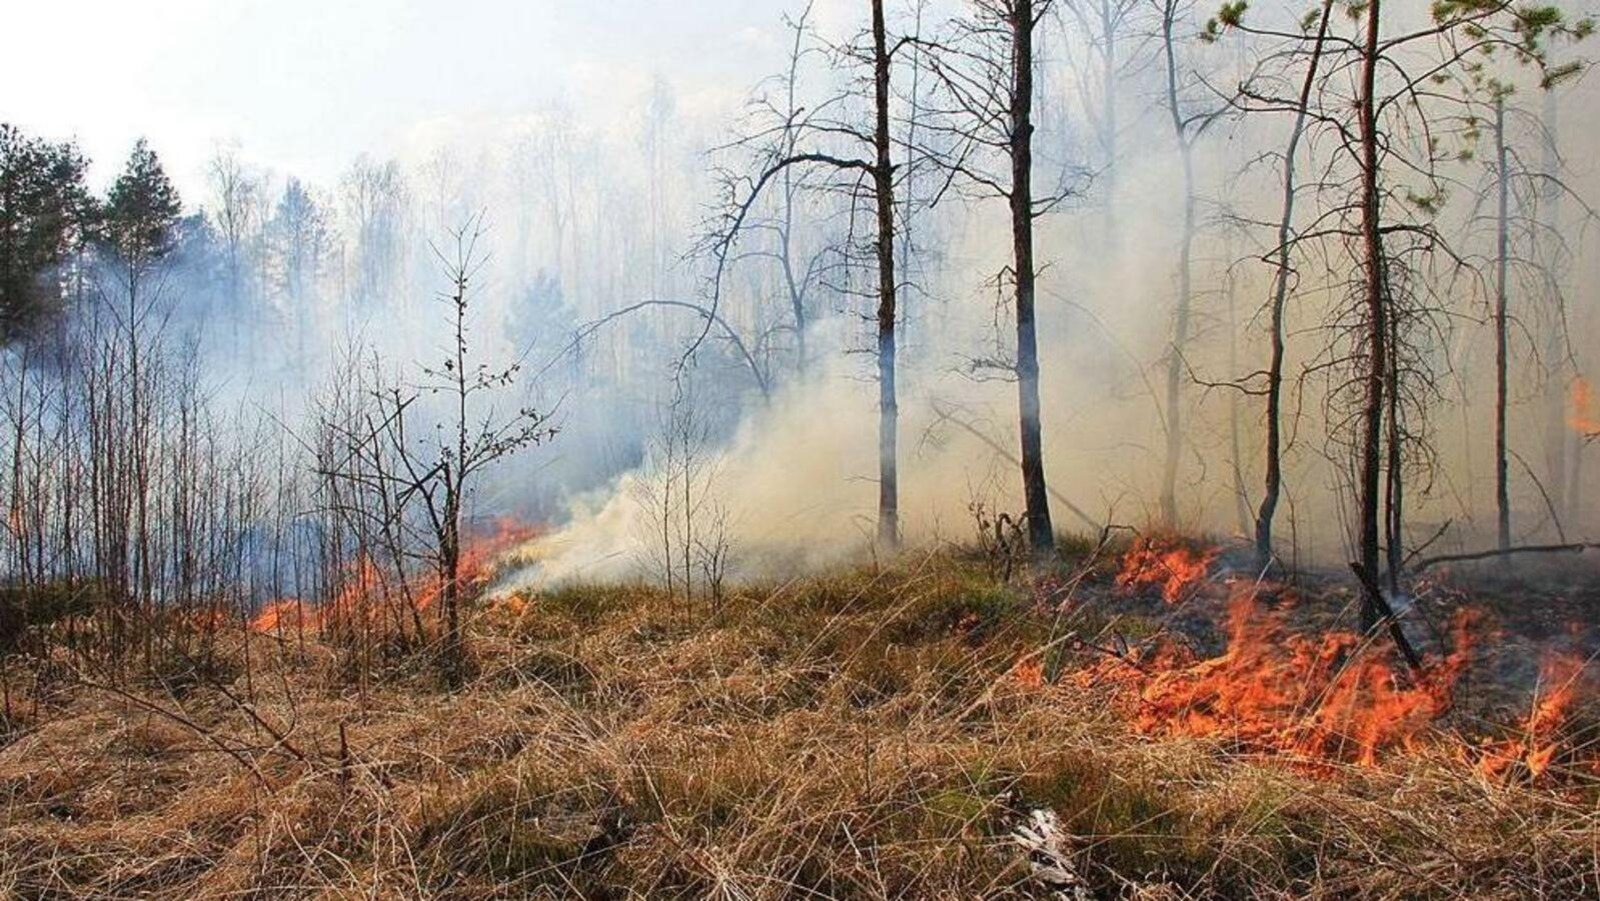 4-й класс пожароопасности прогнозируется в Архангельском районе